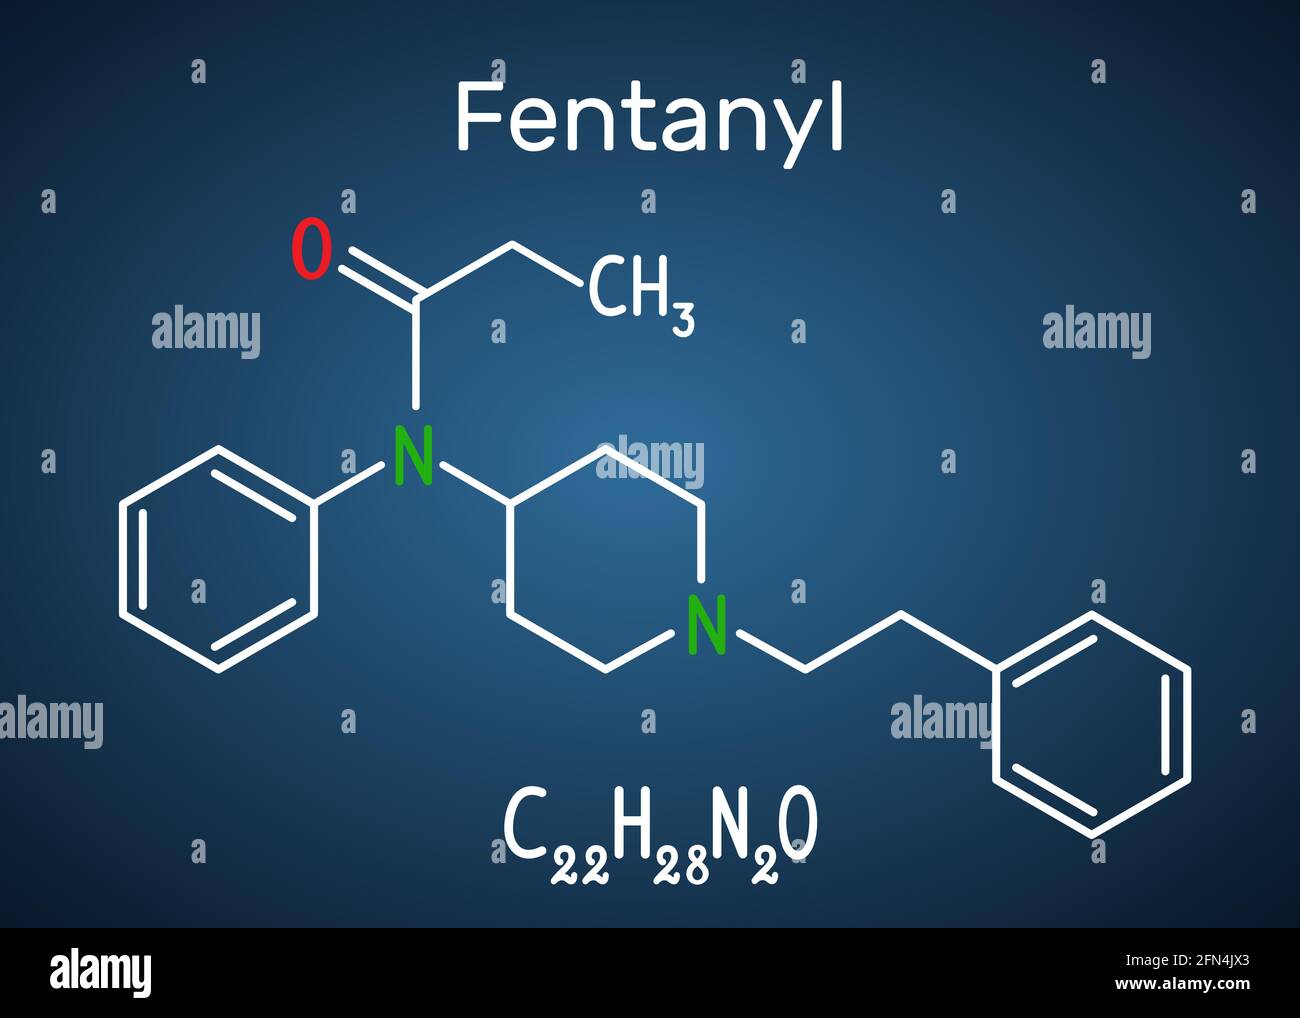 Molécule de fentanyl. Il est analgésique opioïde. Formule chimique structurale et modèle moléculaire sur fond bleu foncé. Illustration vectorielle Illustration de Vecteur